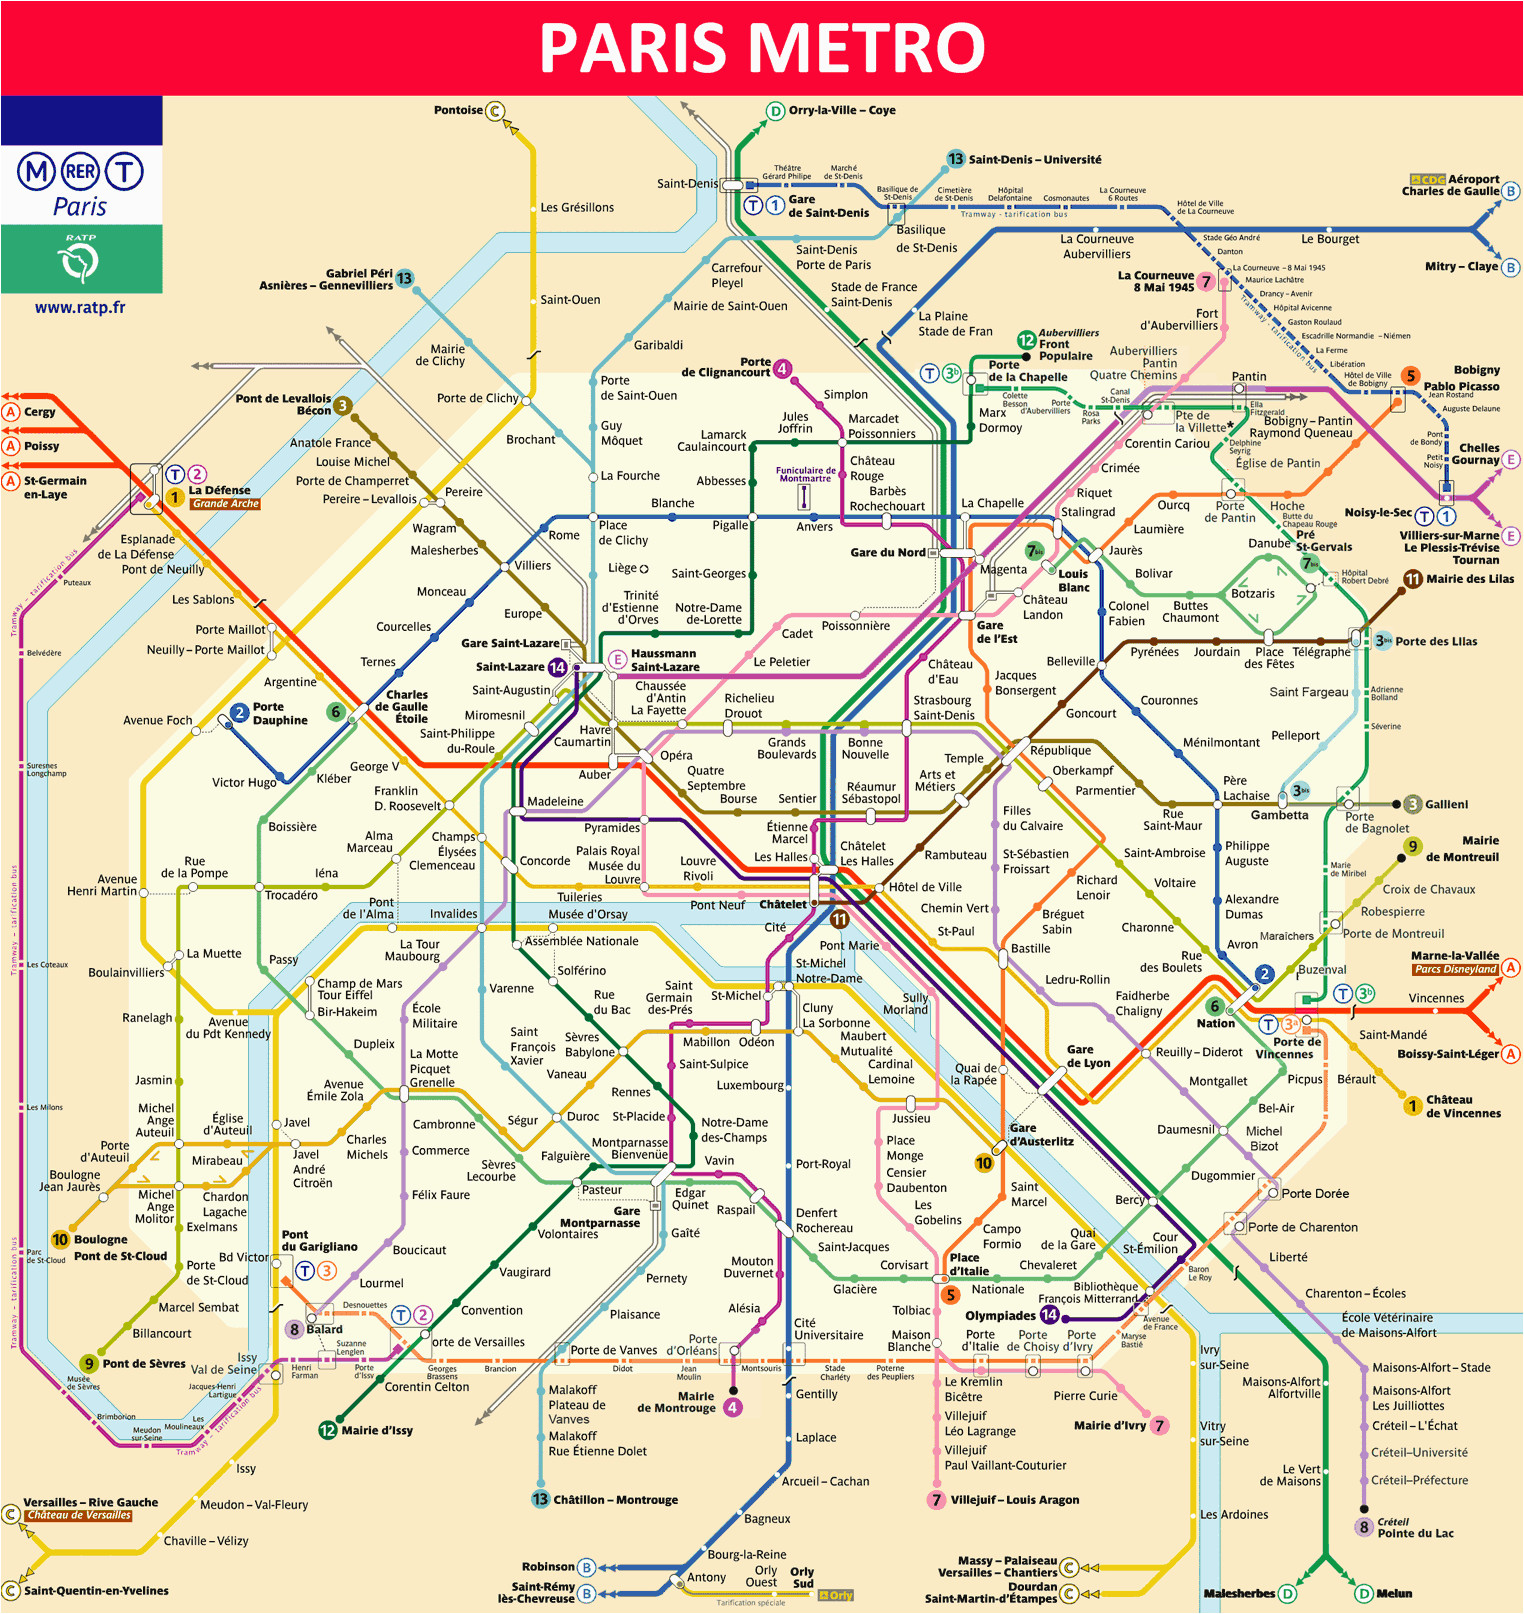 paris metro map 2019 timetable ticket price tourist information